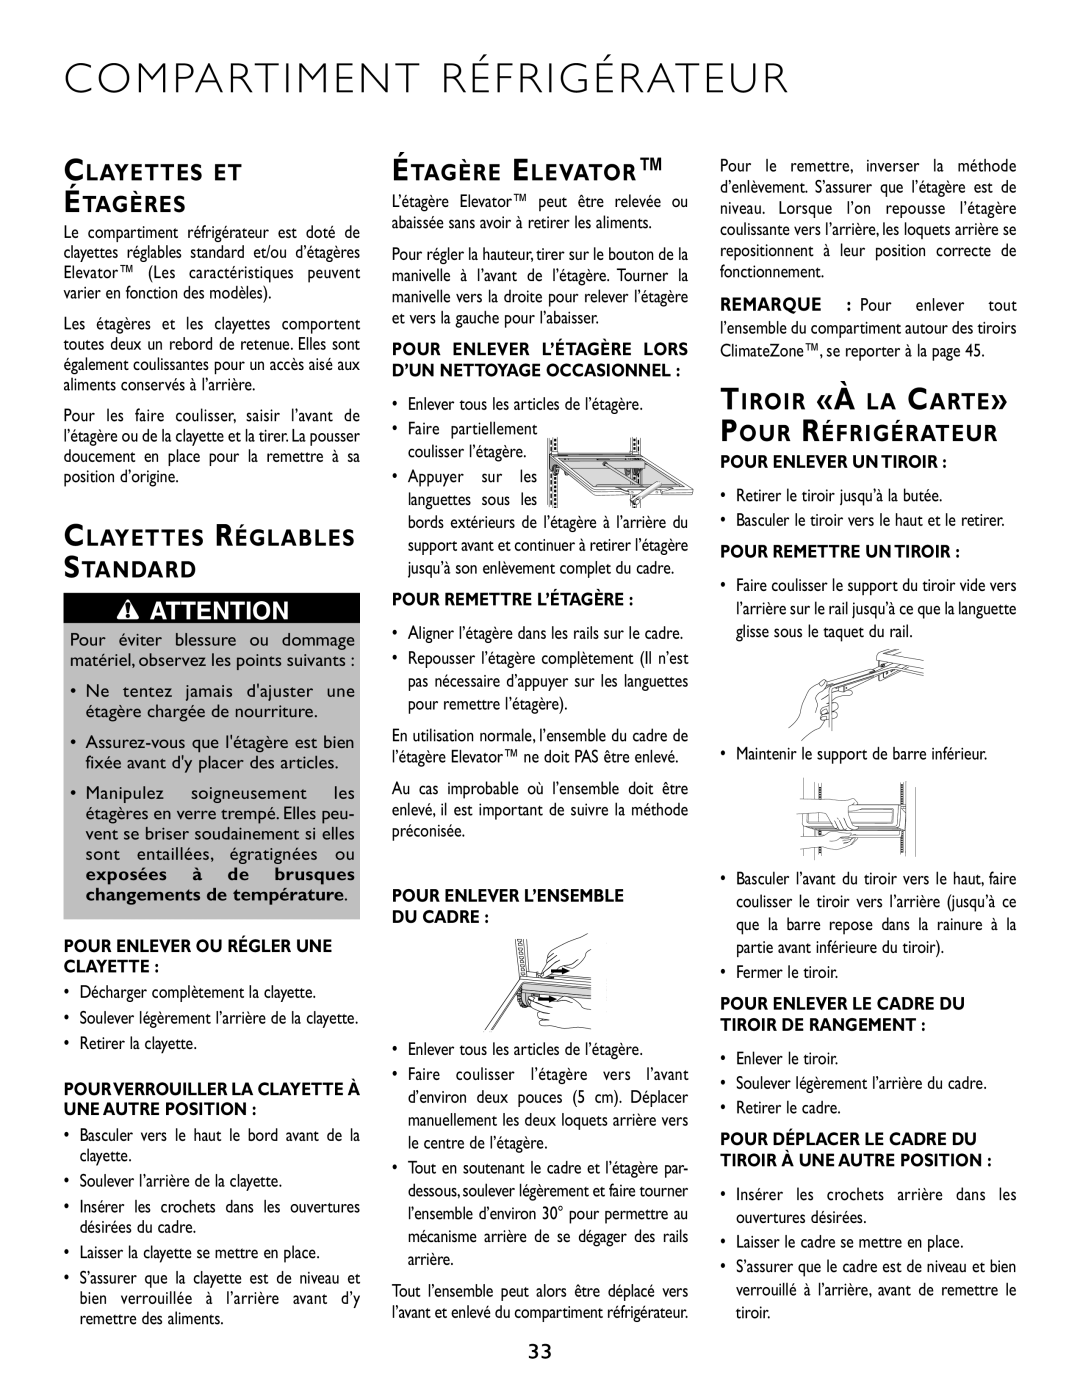 Maytag JS42CSFXDA manual Compartiment Réfrigérateur, Clayettes Et Étagères, Étagère Elevator, Clayettes Réglables Standard 